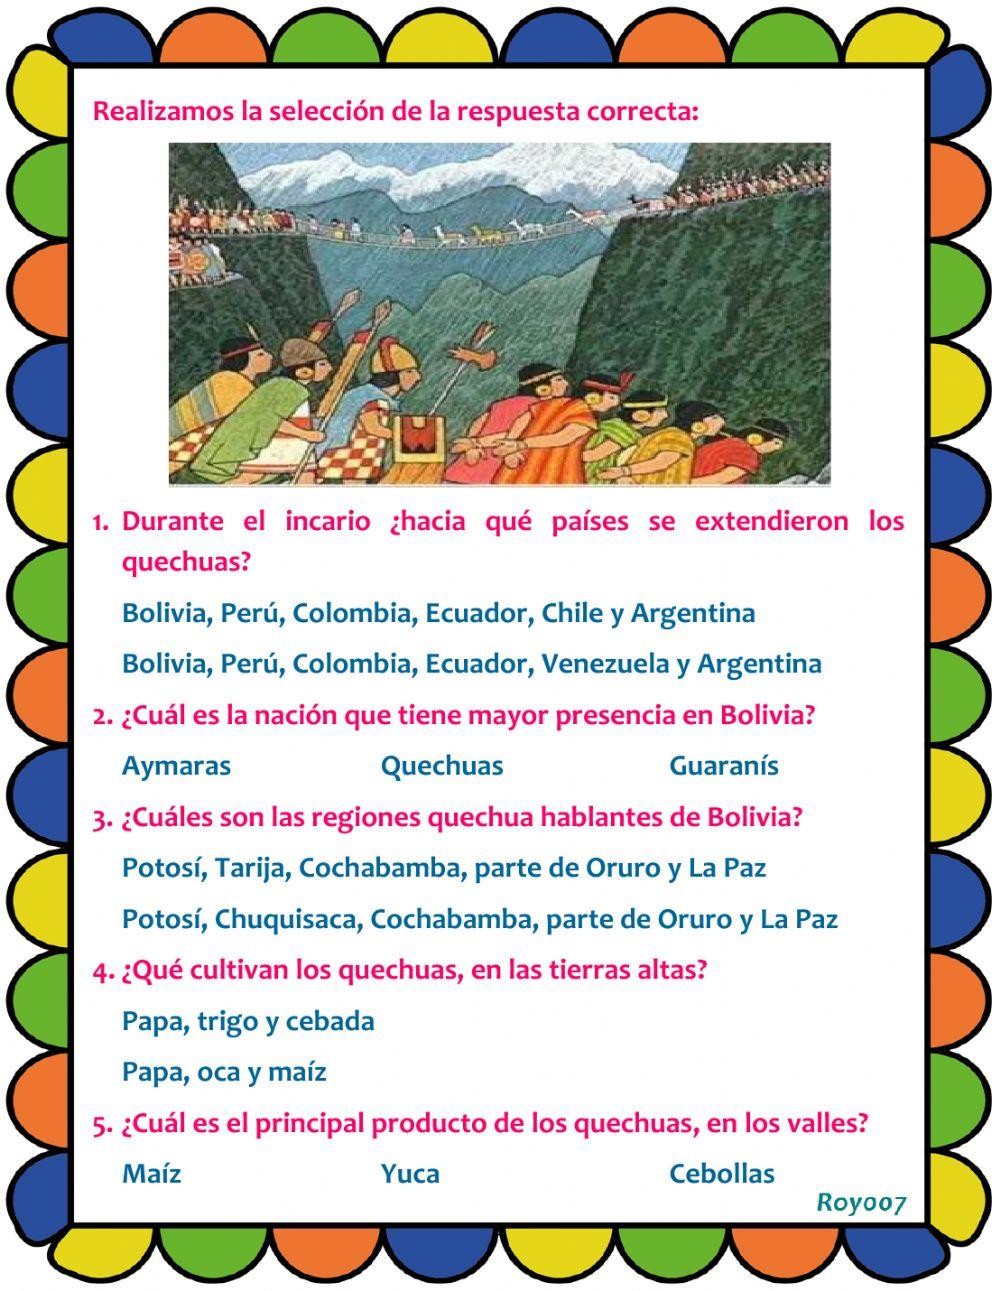 Los quechuas